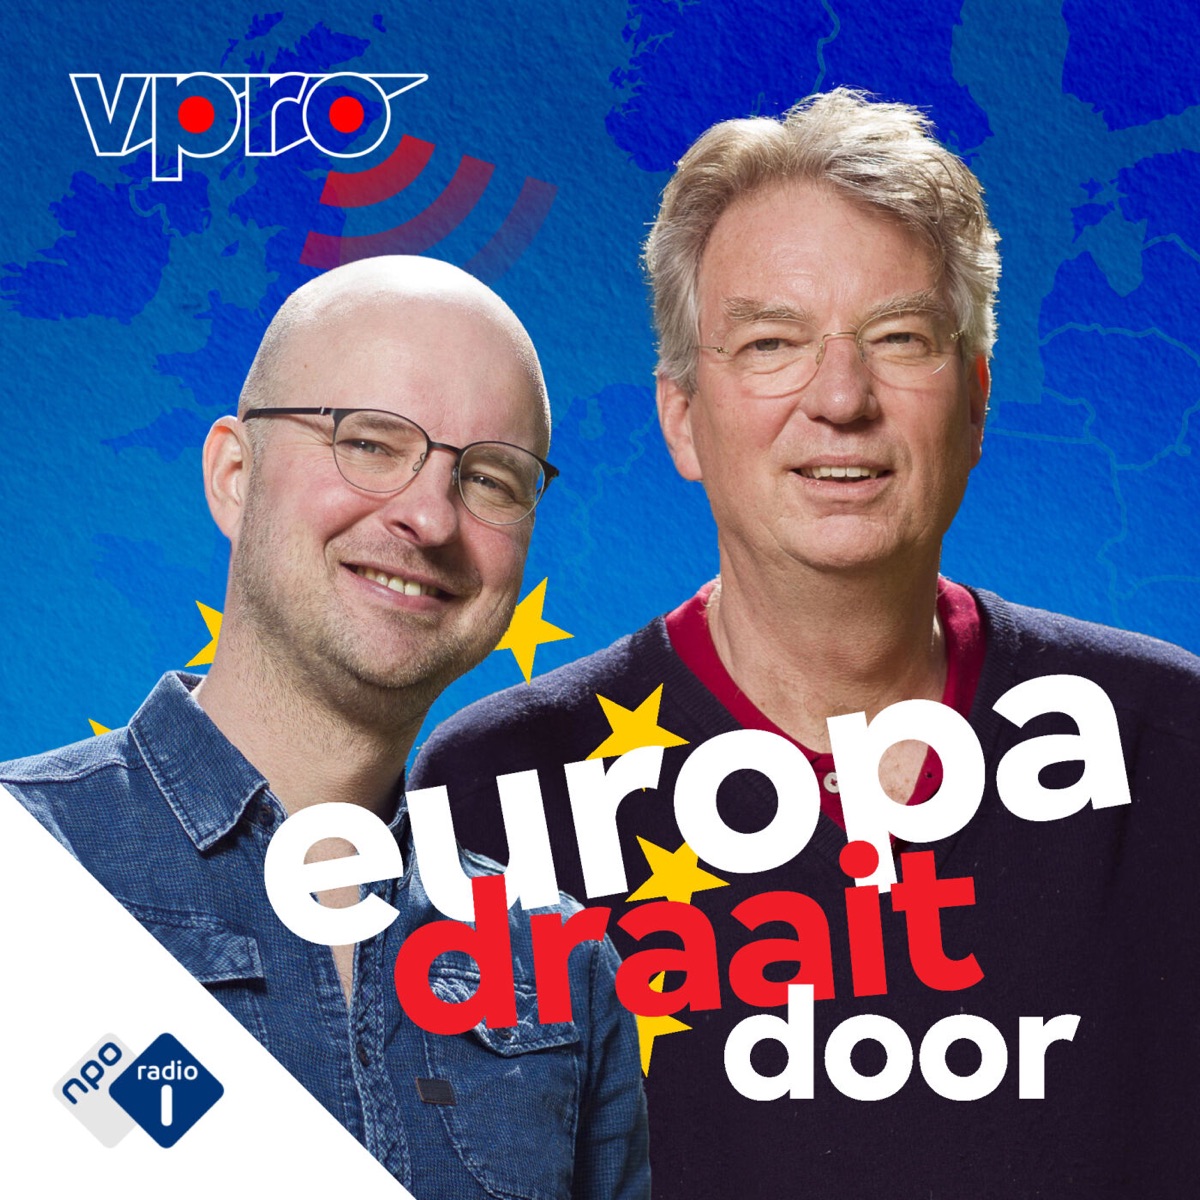 Europa Draait Door – Podcast – Podtail